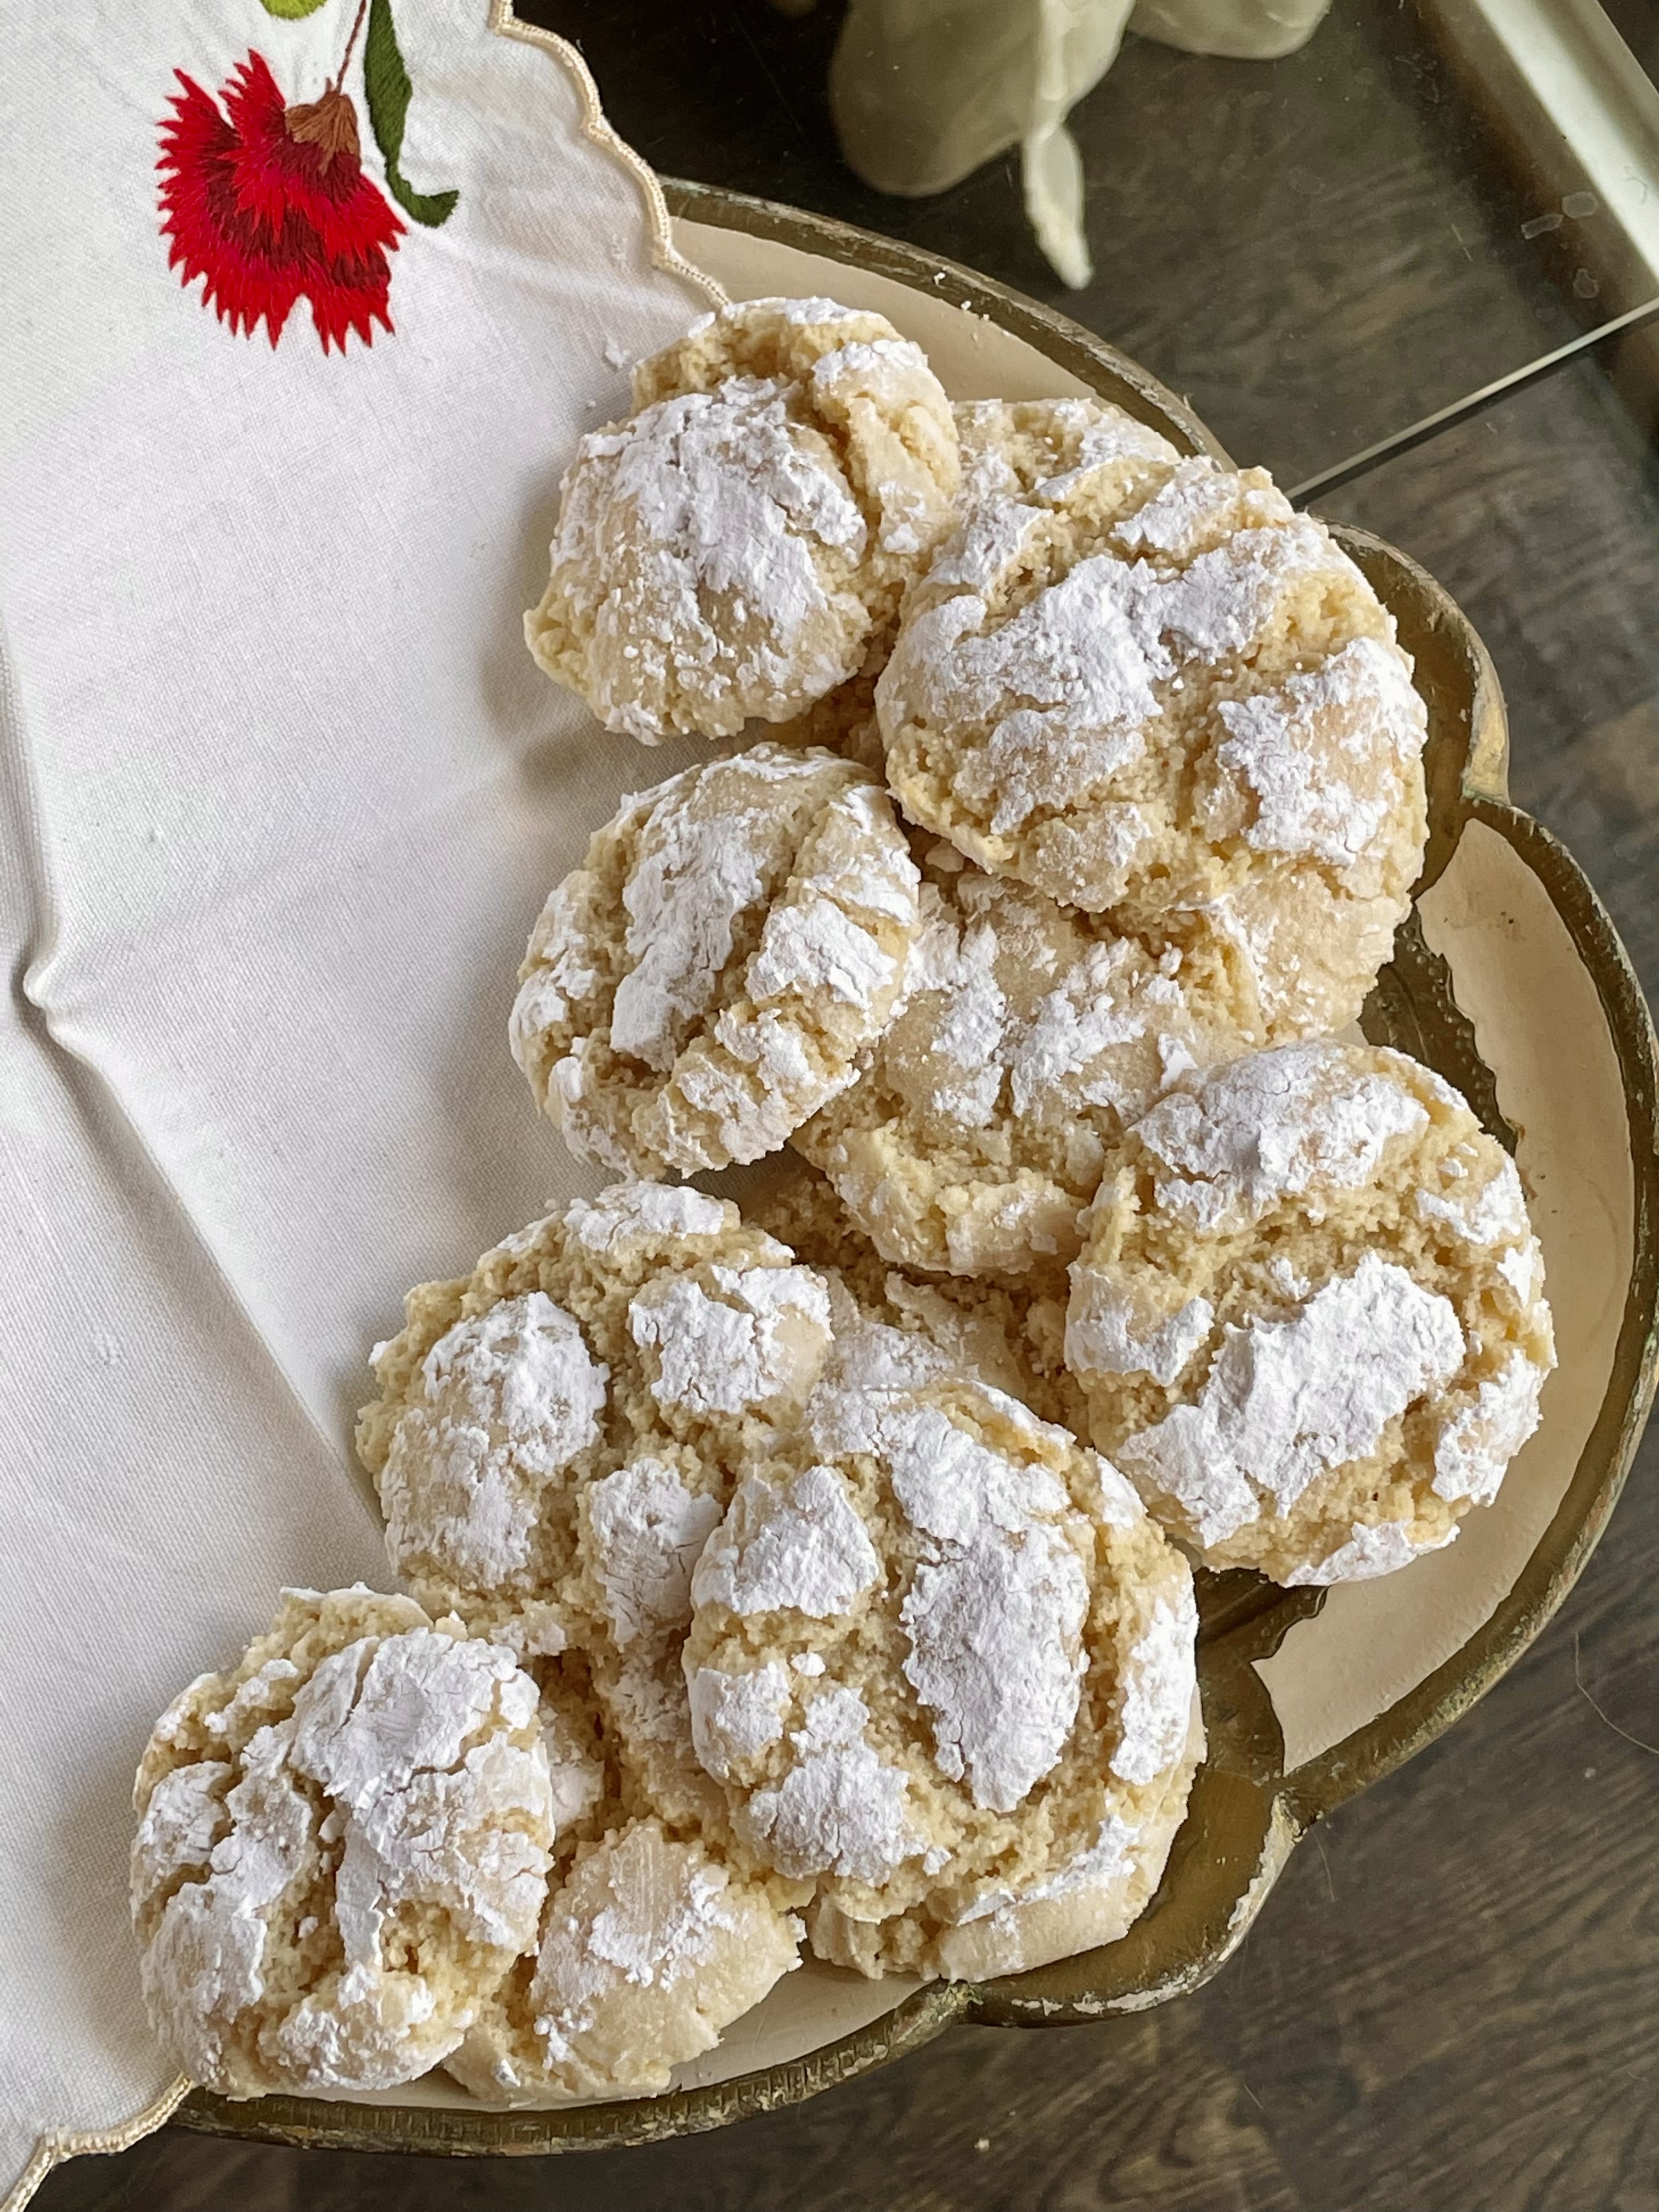 Amaretti, or Italian Wedding Cookies